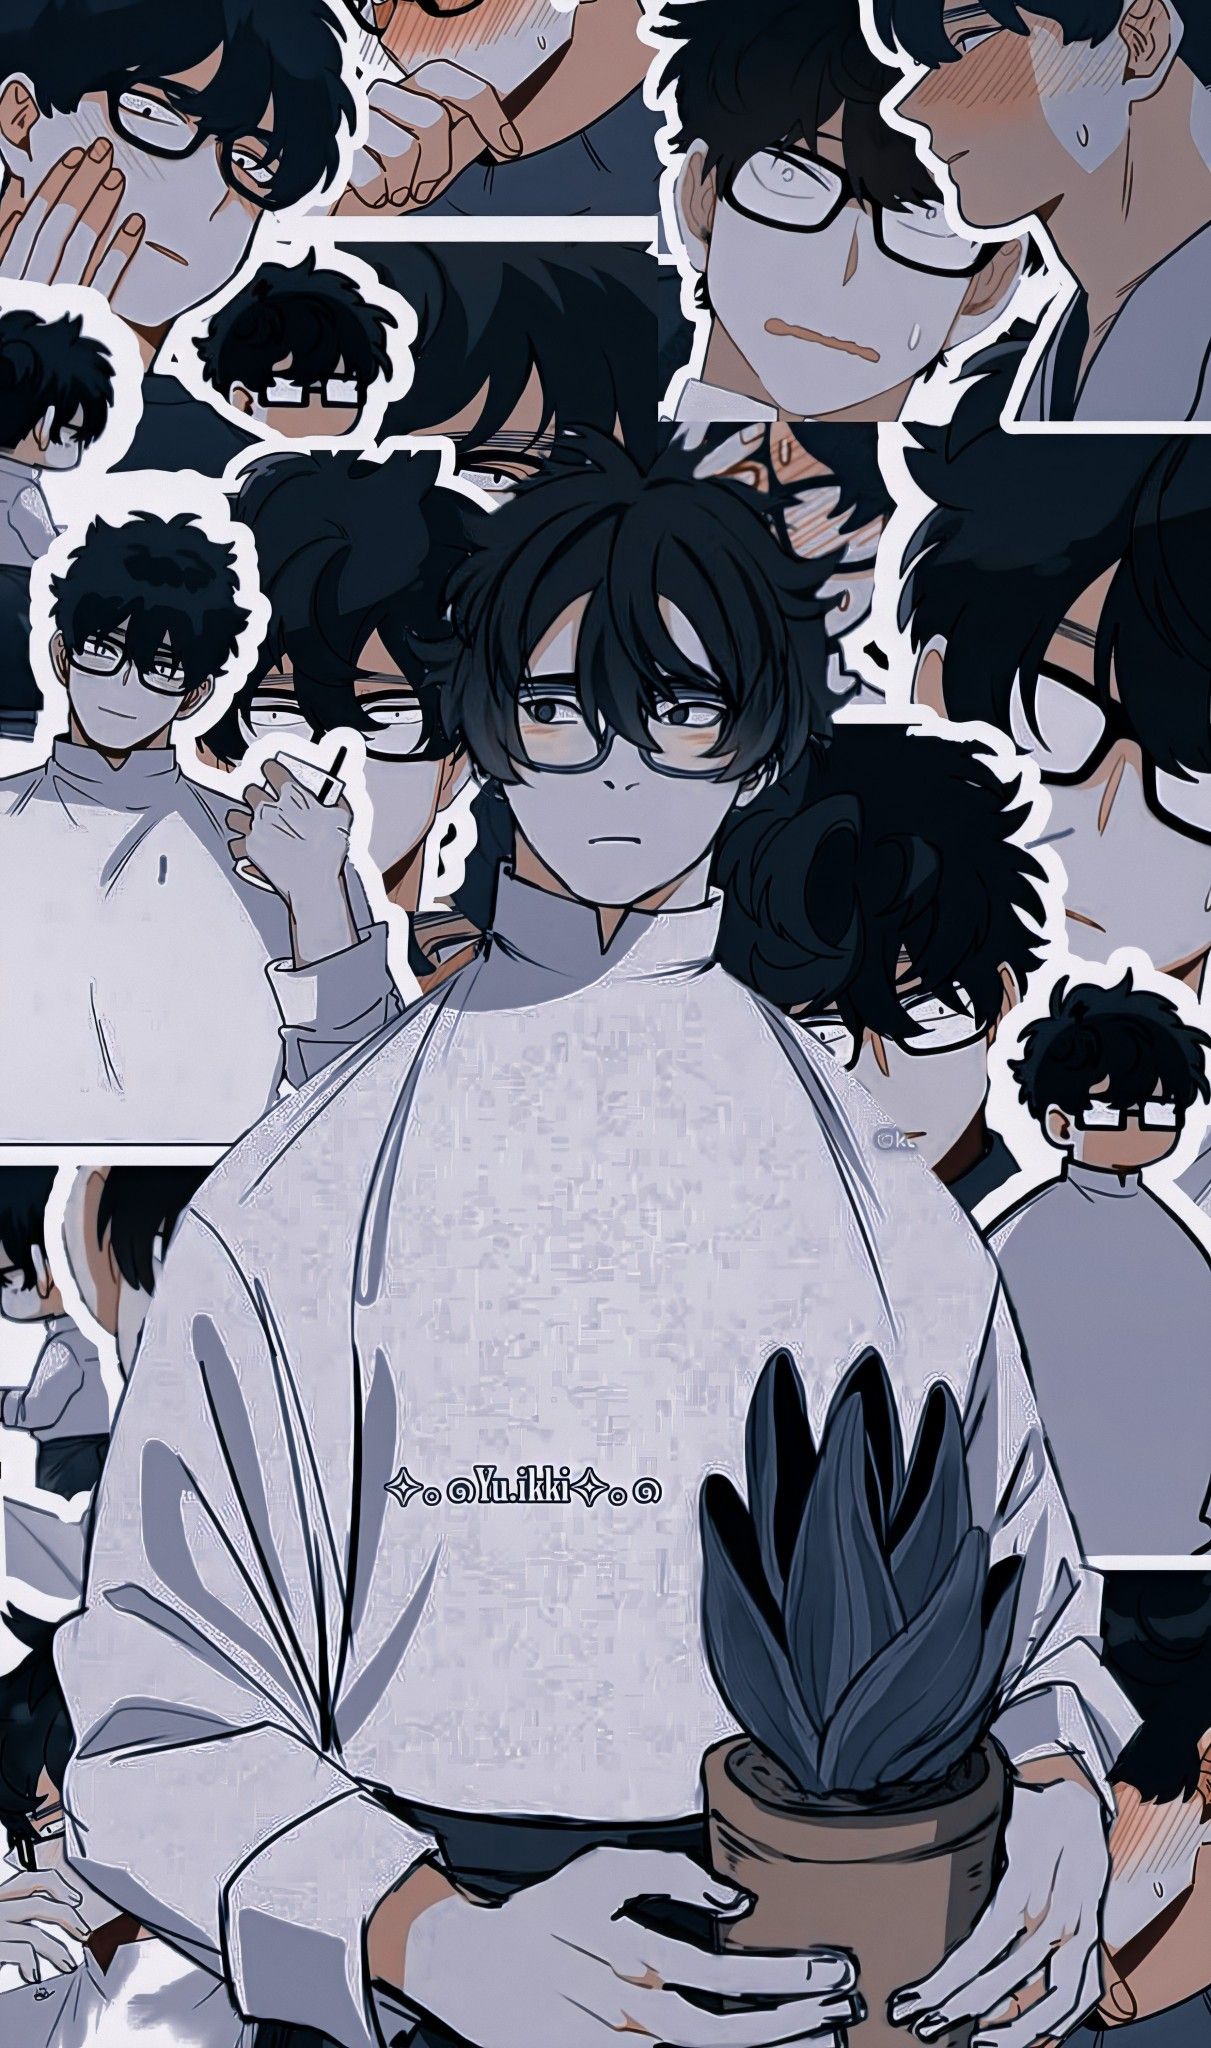 Wallpaper Go Yohan sign em 2020. Personagens de anime, Animes wallpaper, Mangá wallpaper